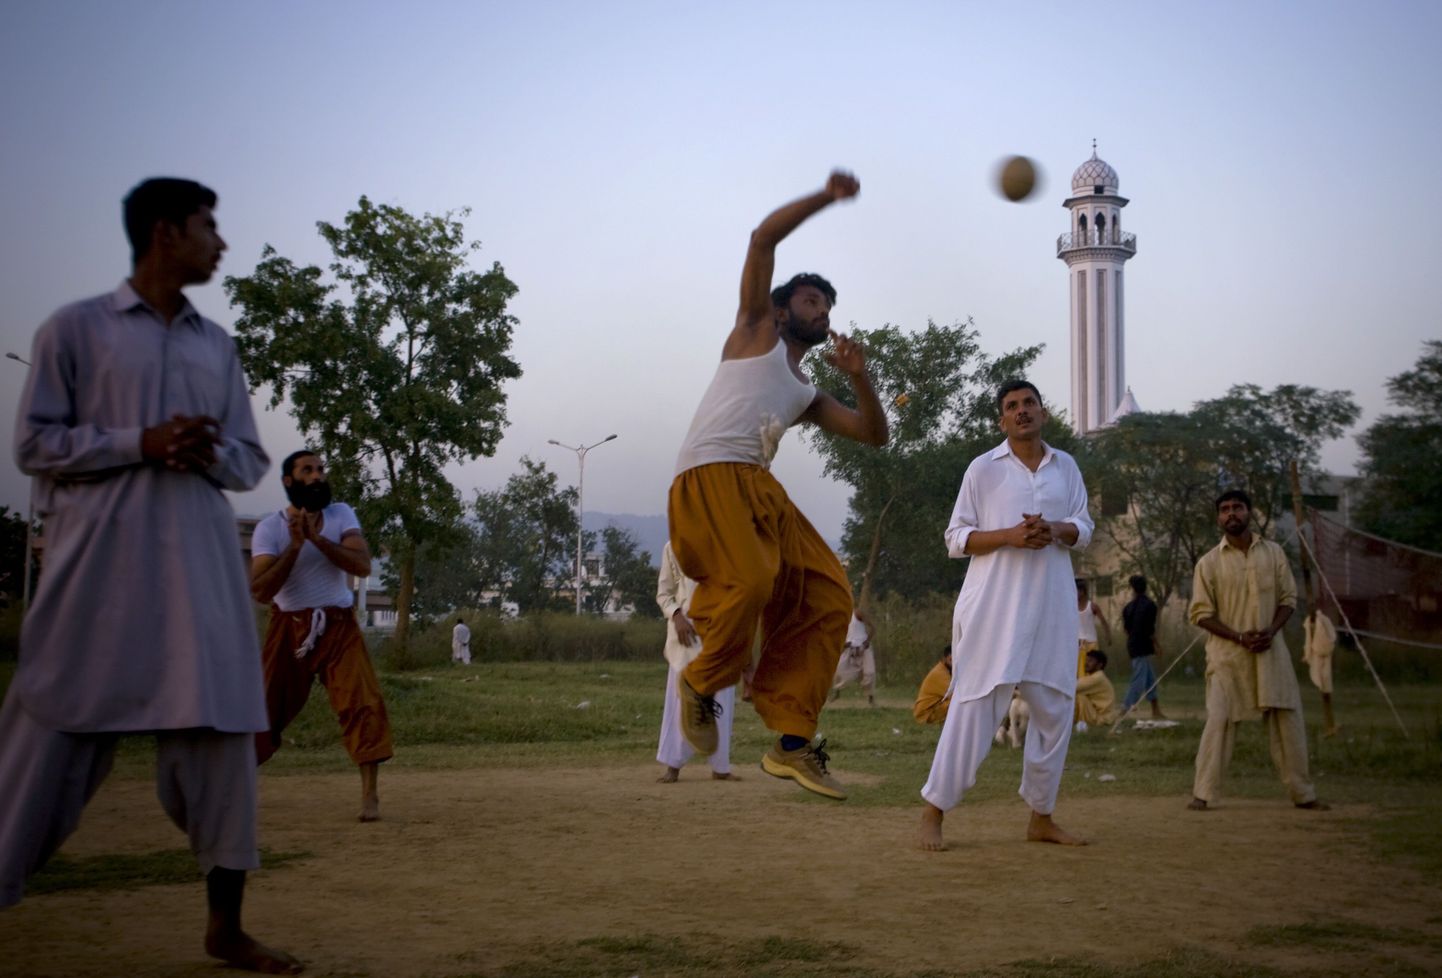 Pakistani töölised võrkpalli mängimas.